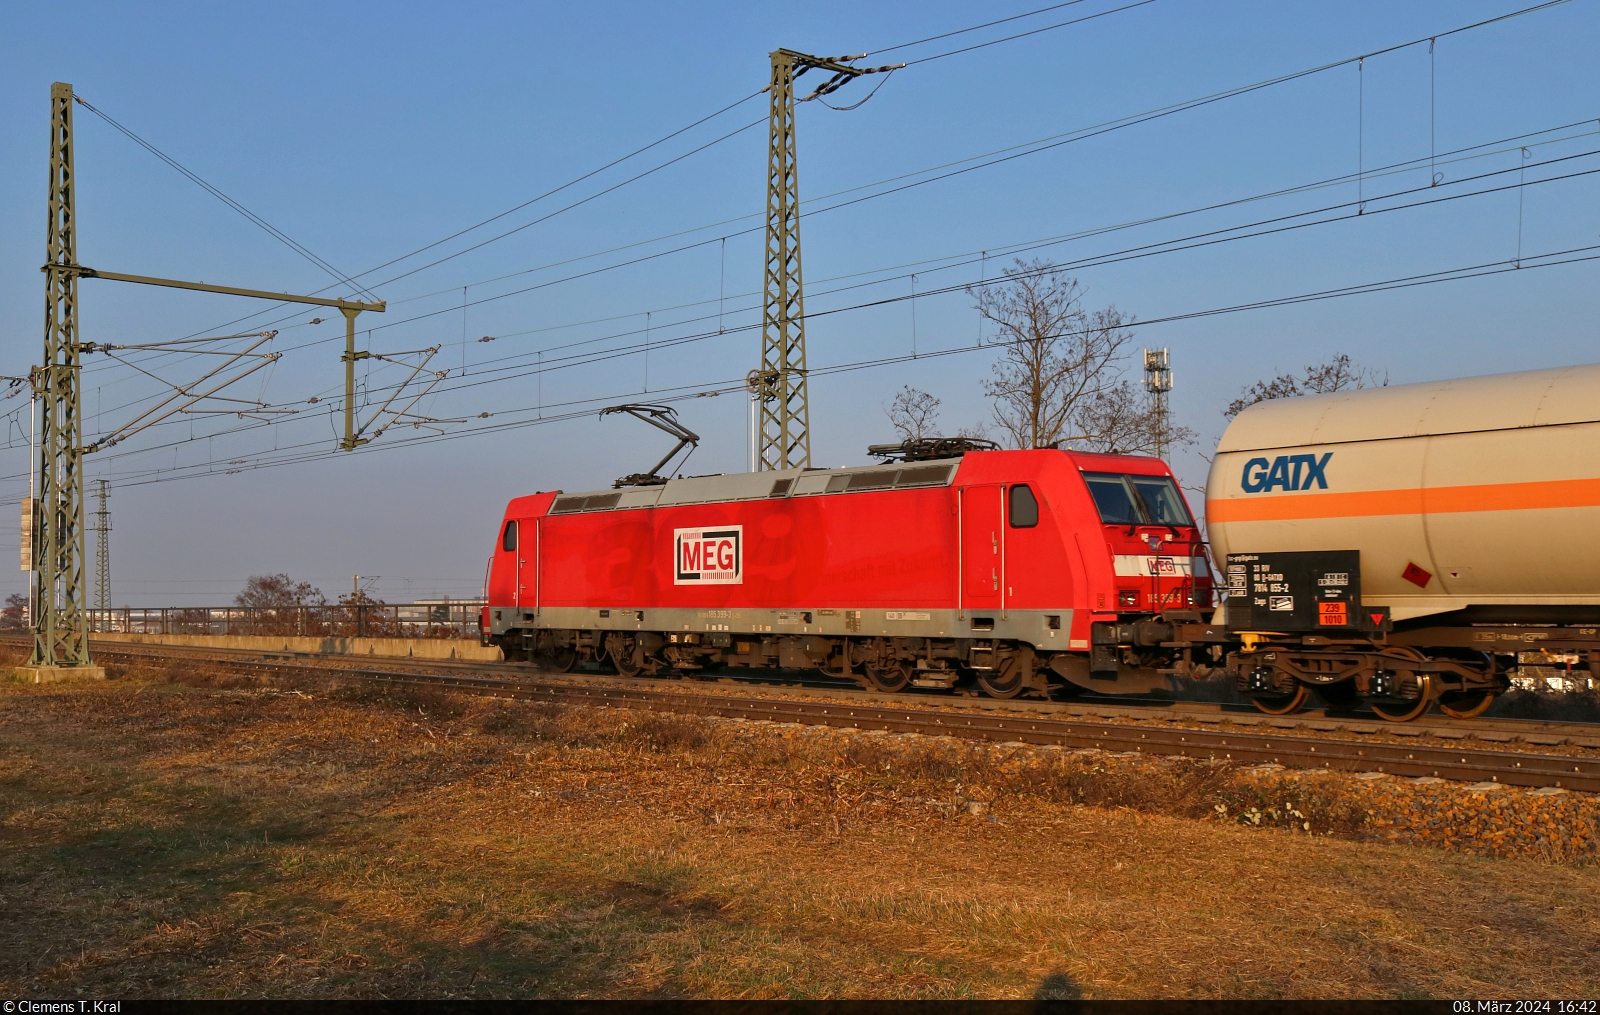 Bombardiers 399. gebaute TRAXX, 185 399-3, hatte am späten Nachmittag des Frauentages die Aufgabe, Kesselwagen über die Gütergleise von Halle (Saale) zu führen. Hier befährt sie die Brücke über die Leipziger Chaussee (B 6) Richtung Zugbildungsanlage (ZBA). Die Jubiläumsfolie wurde inzwischen entfernt, ist aber noch schemenhaft erkennbar.

🧰 DB Cargo, vermietet an die Mitteldeutsche Eisenbahn GmbH (MEG)
🕓 8.3.2024 | 16:42 Uhr